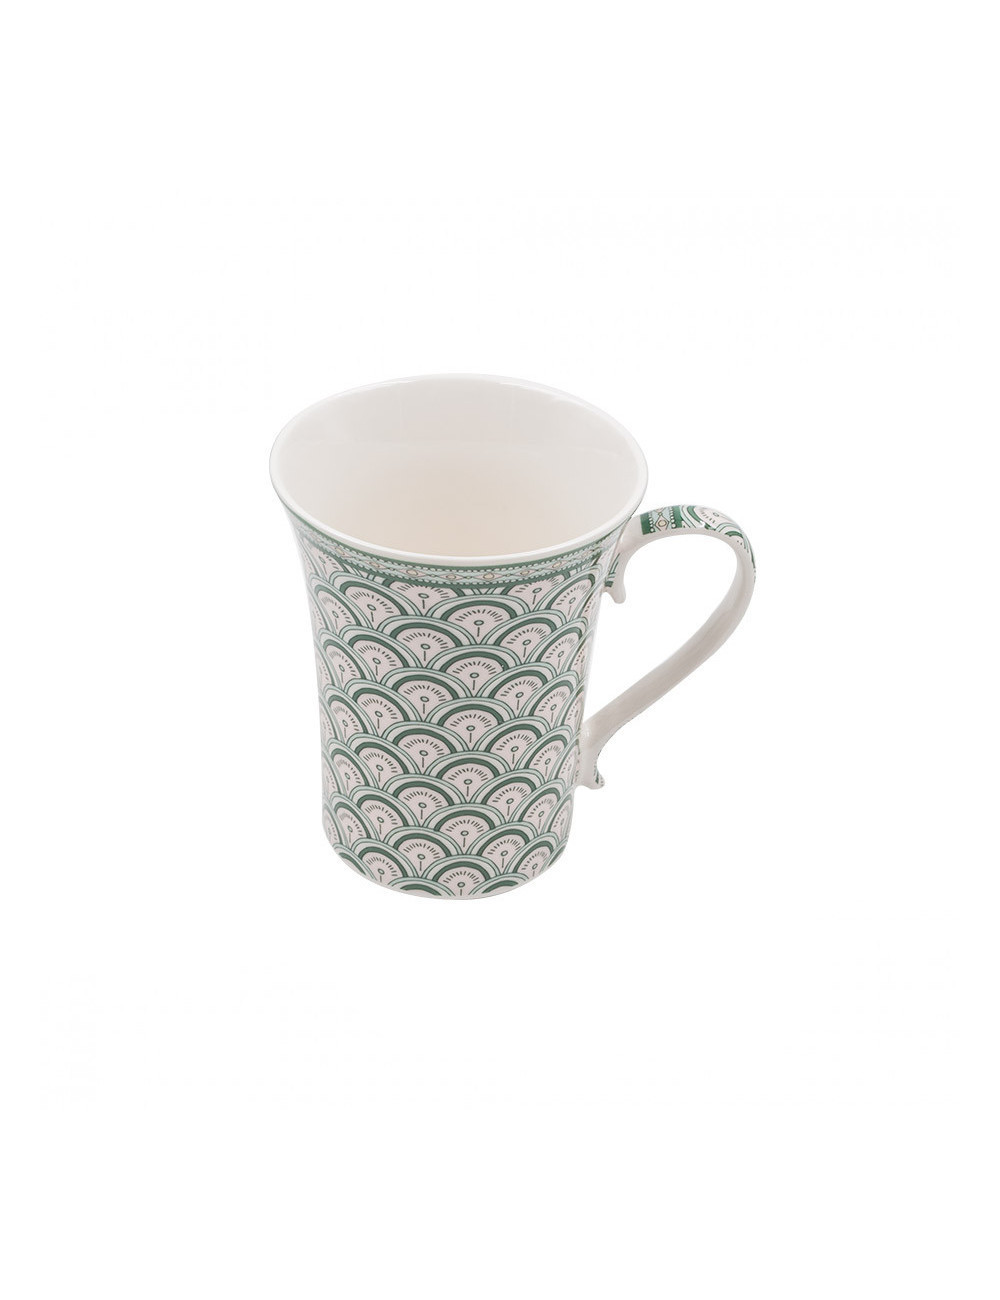 Elegante mug in porcellana Seasons decorata con ventagli verdi - La Pianta del Tè acquista online